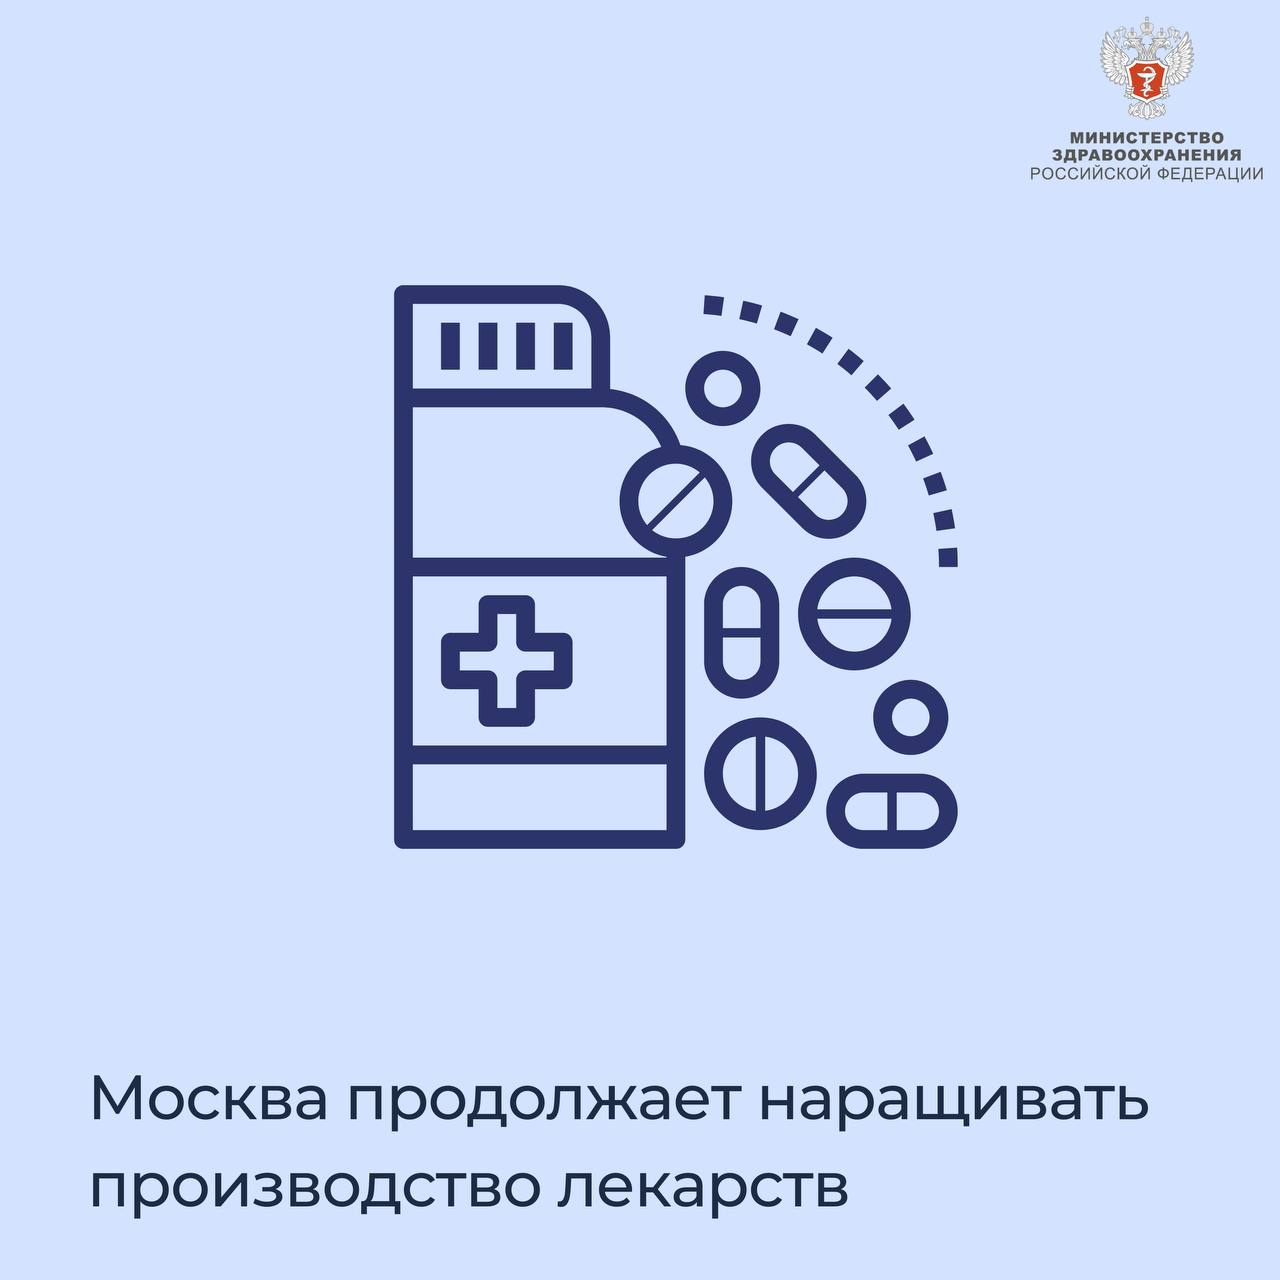 Москва продолжает наращивать производство лекарств